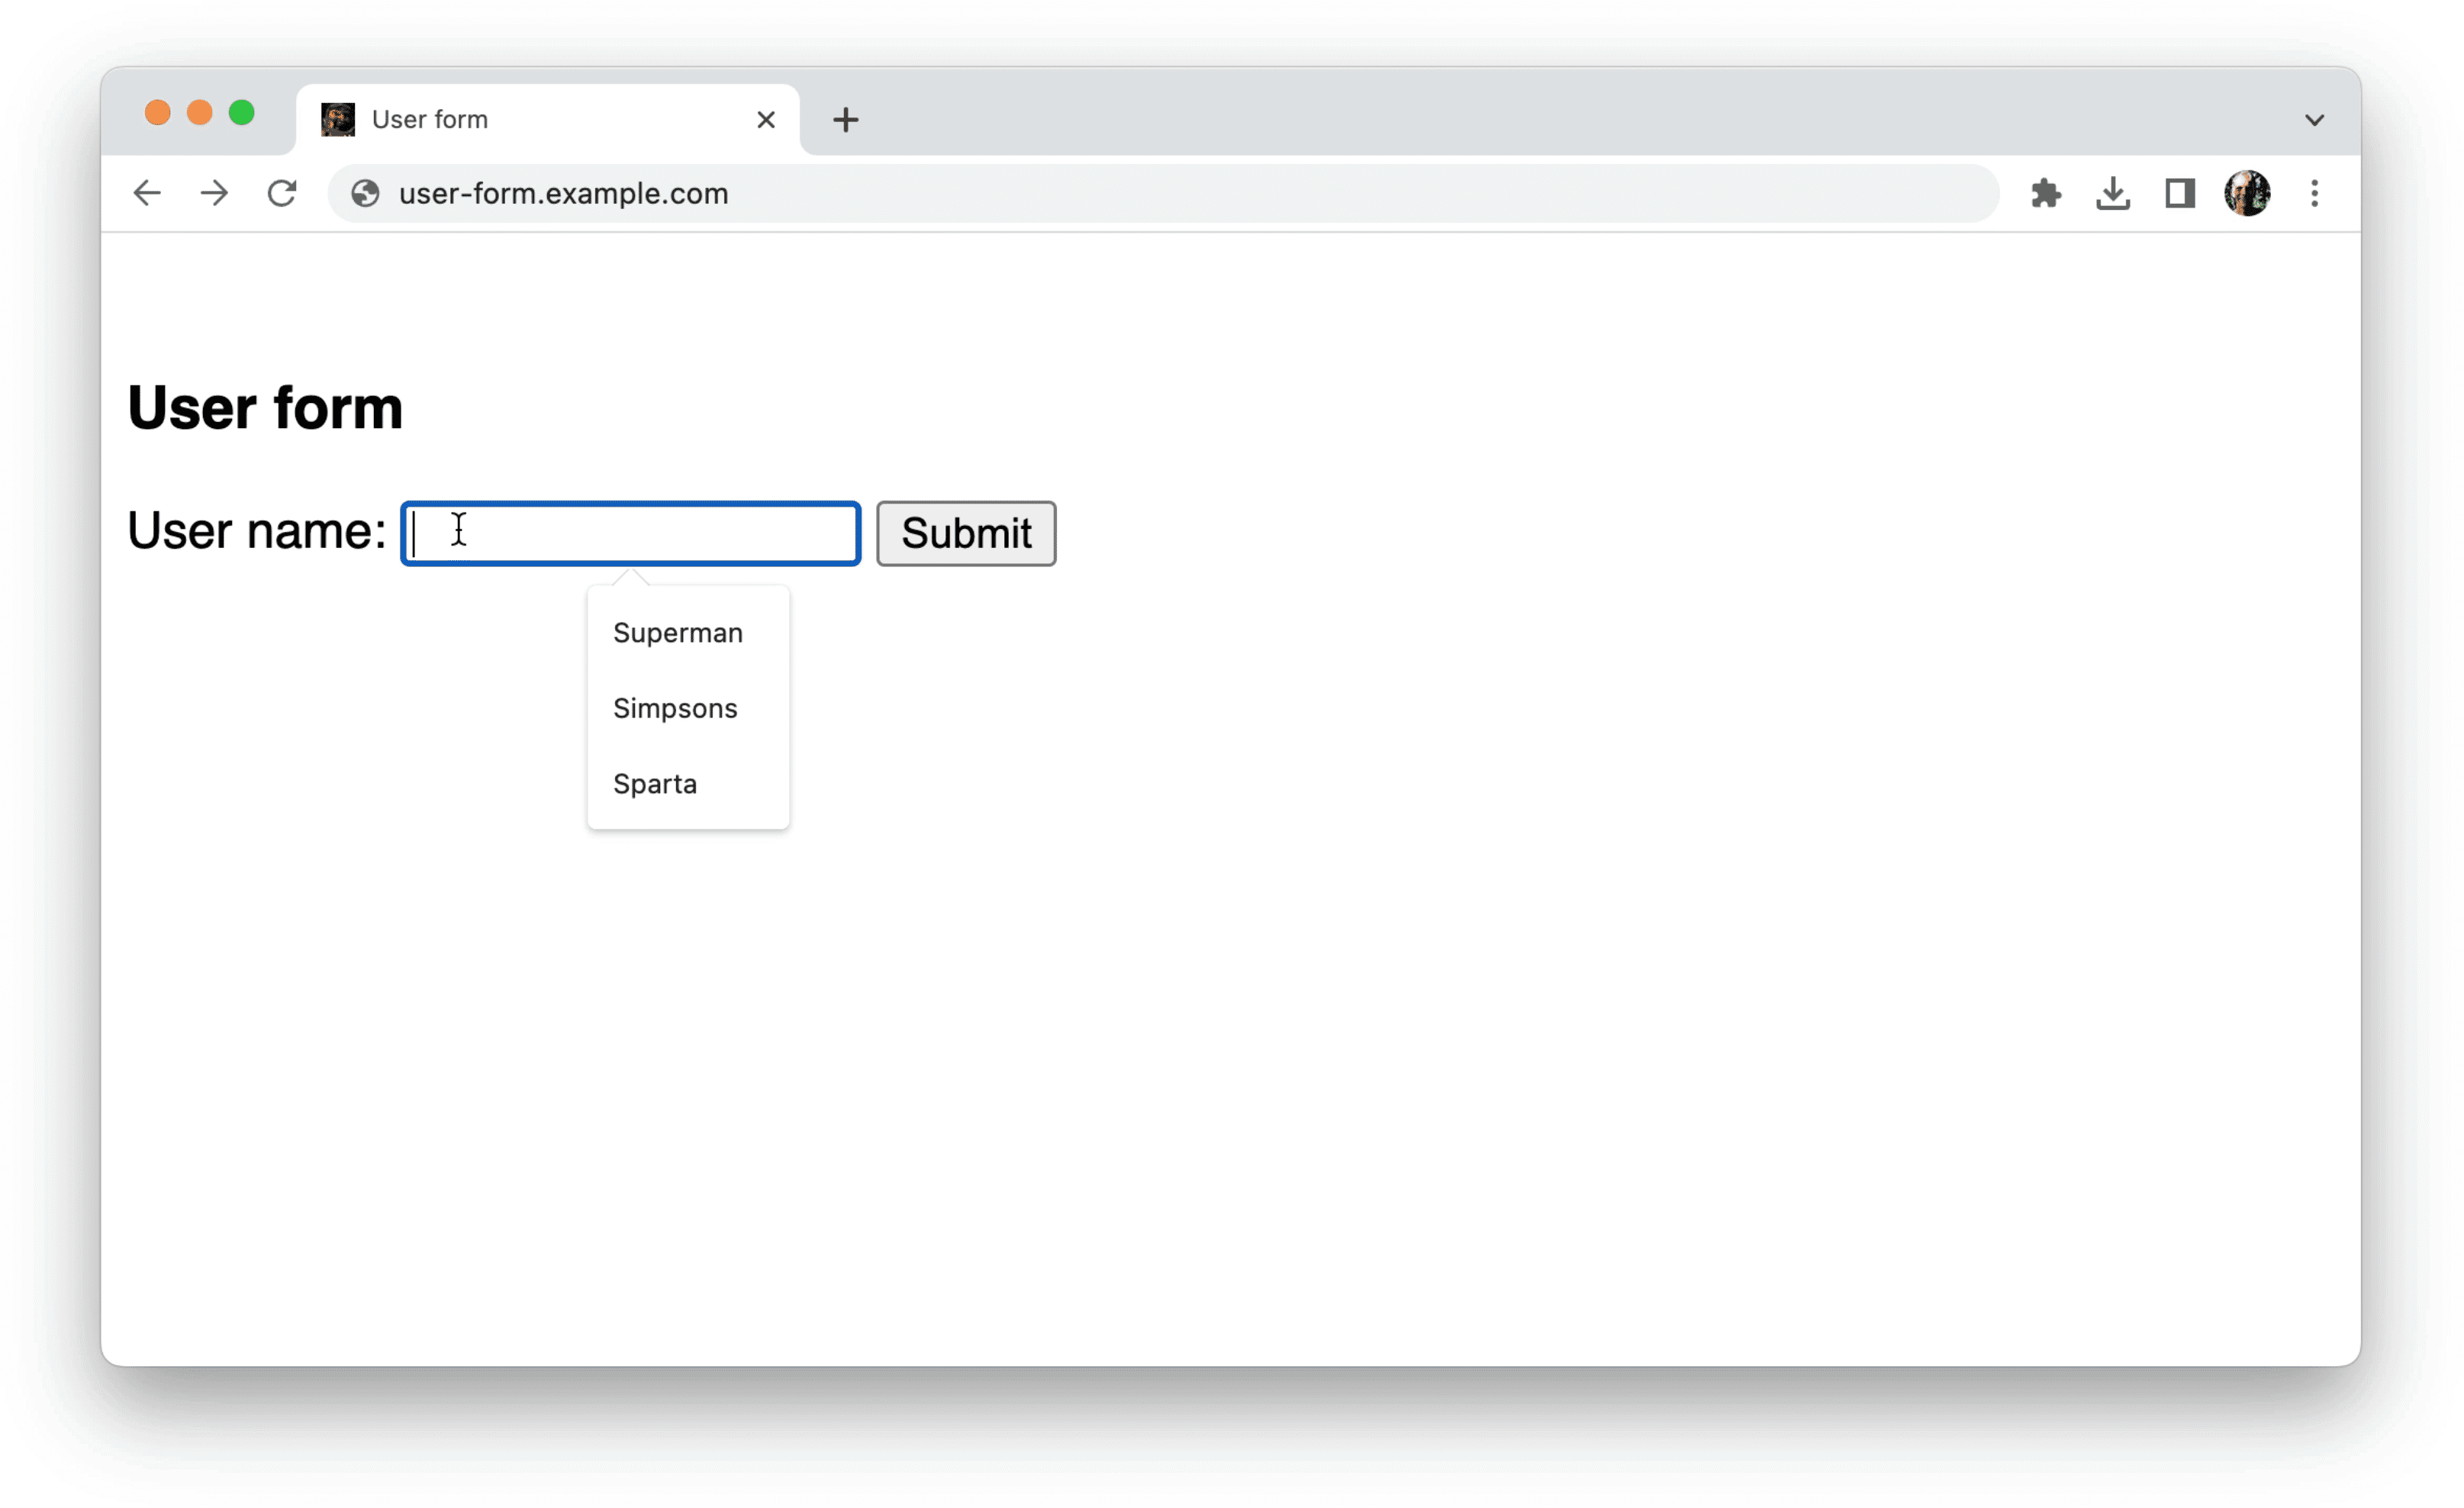 Chrome oferuje sugestie dotyczące nieuporządkowanych danych w jednym polu formularza